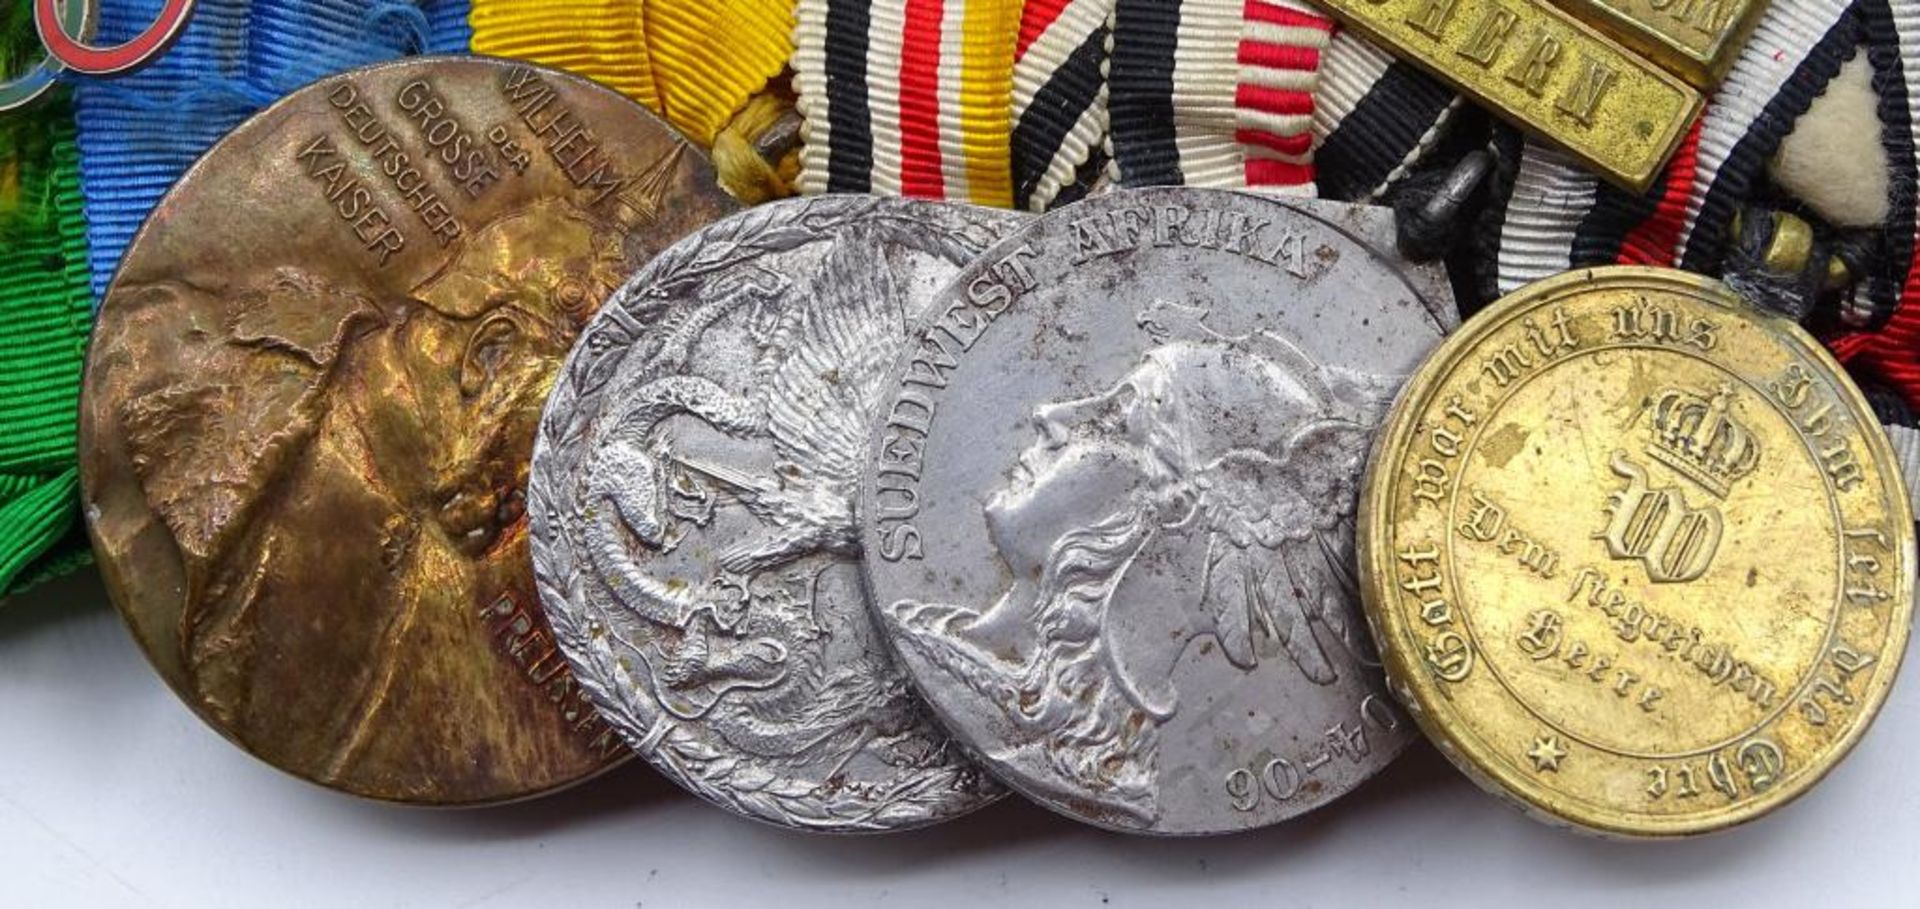 Lange Ordensspange mit 5 Orden/Abzeichen/Medaillen,Königreich Rumänien Orden vom Stern Rumäniens- - Bild 3 aus 10